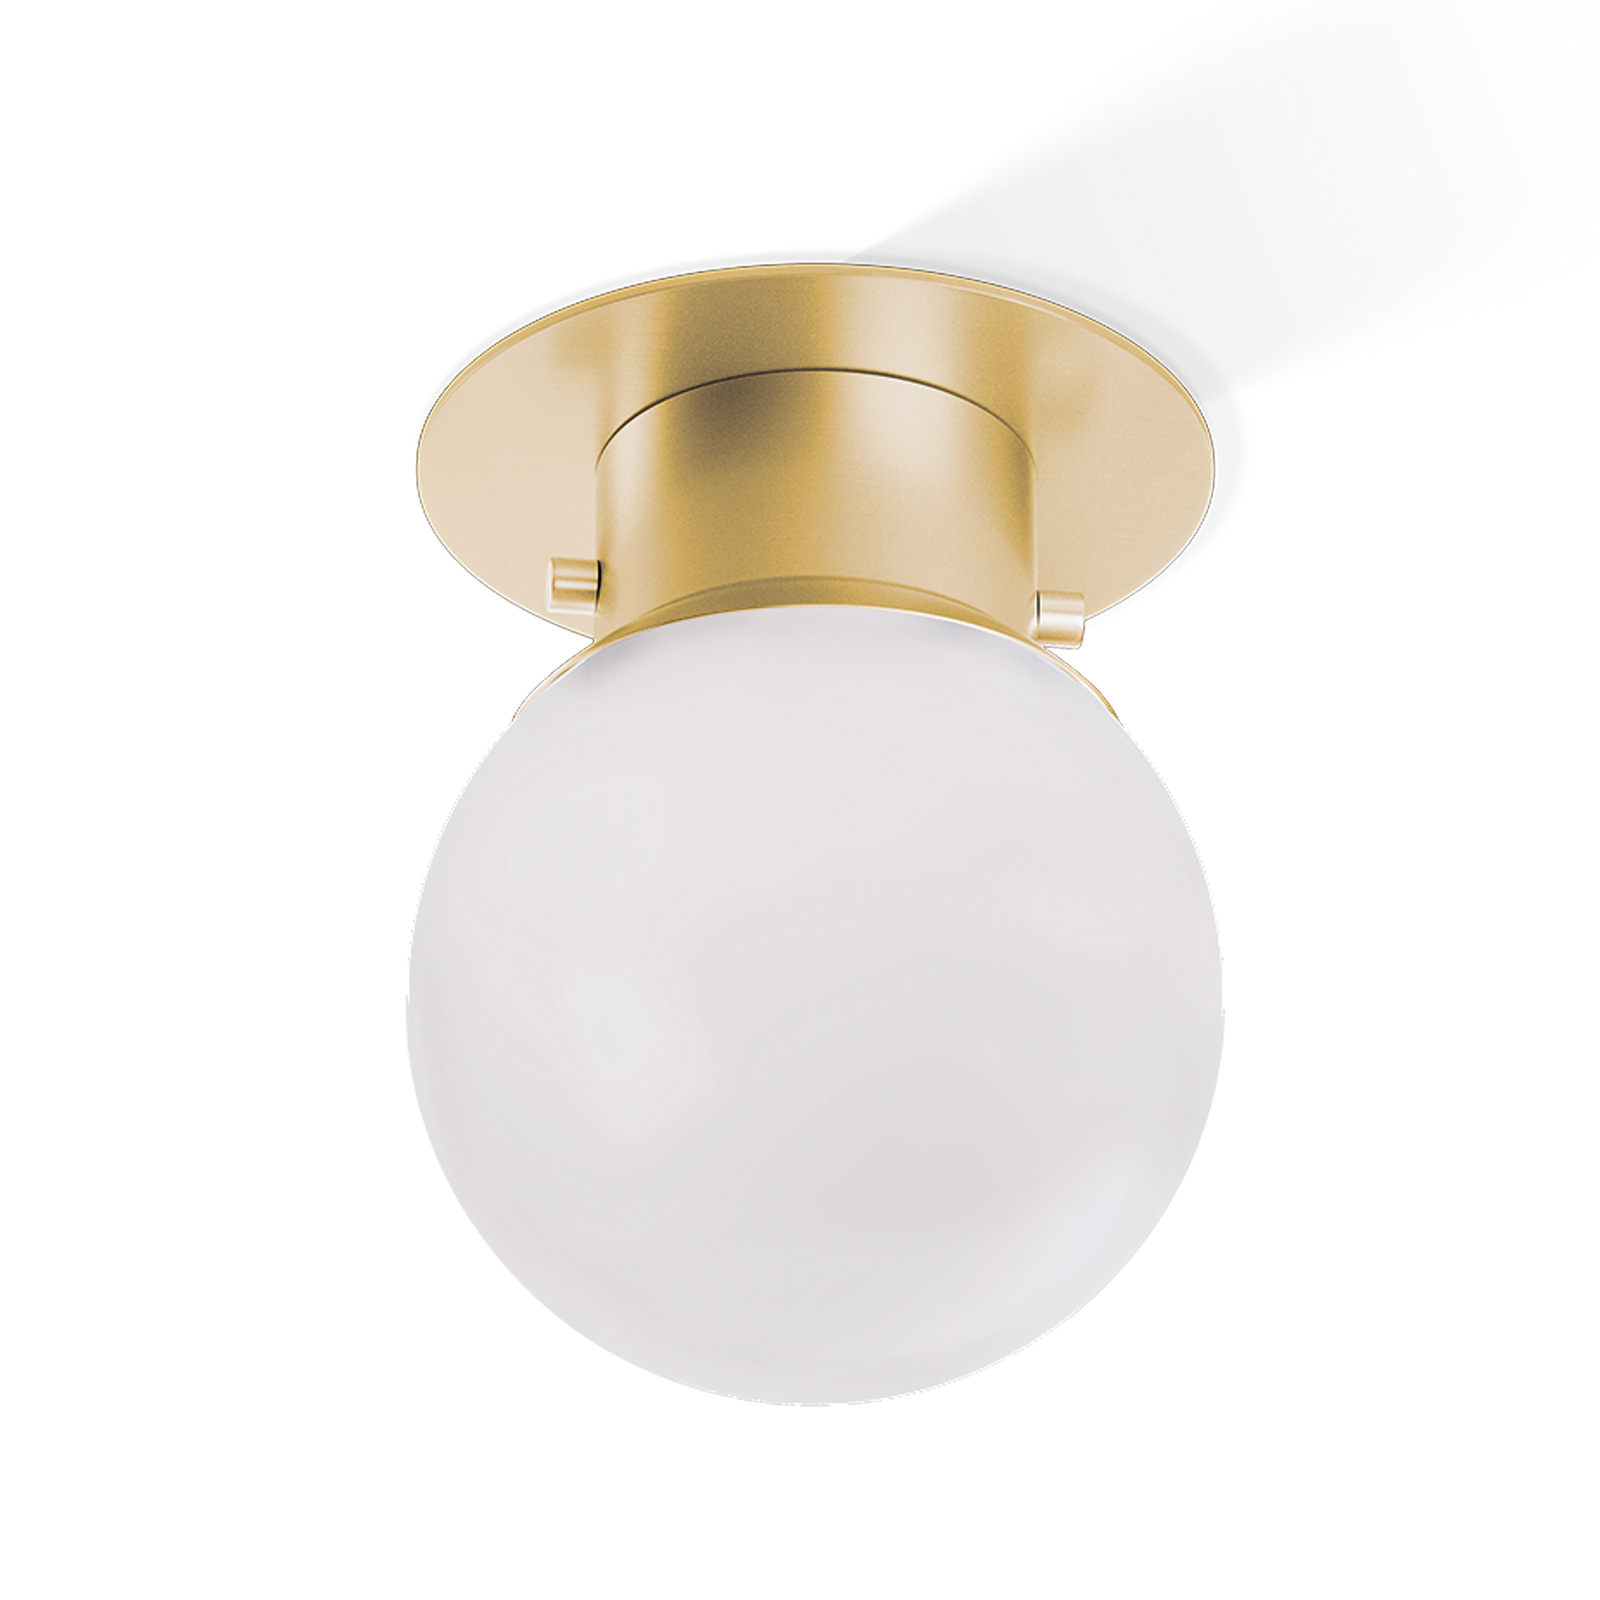 Decor Walther Globe 20 ceiling light, gold/matt